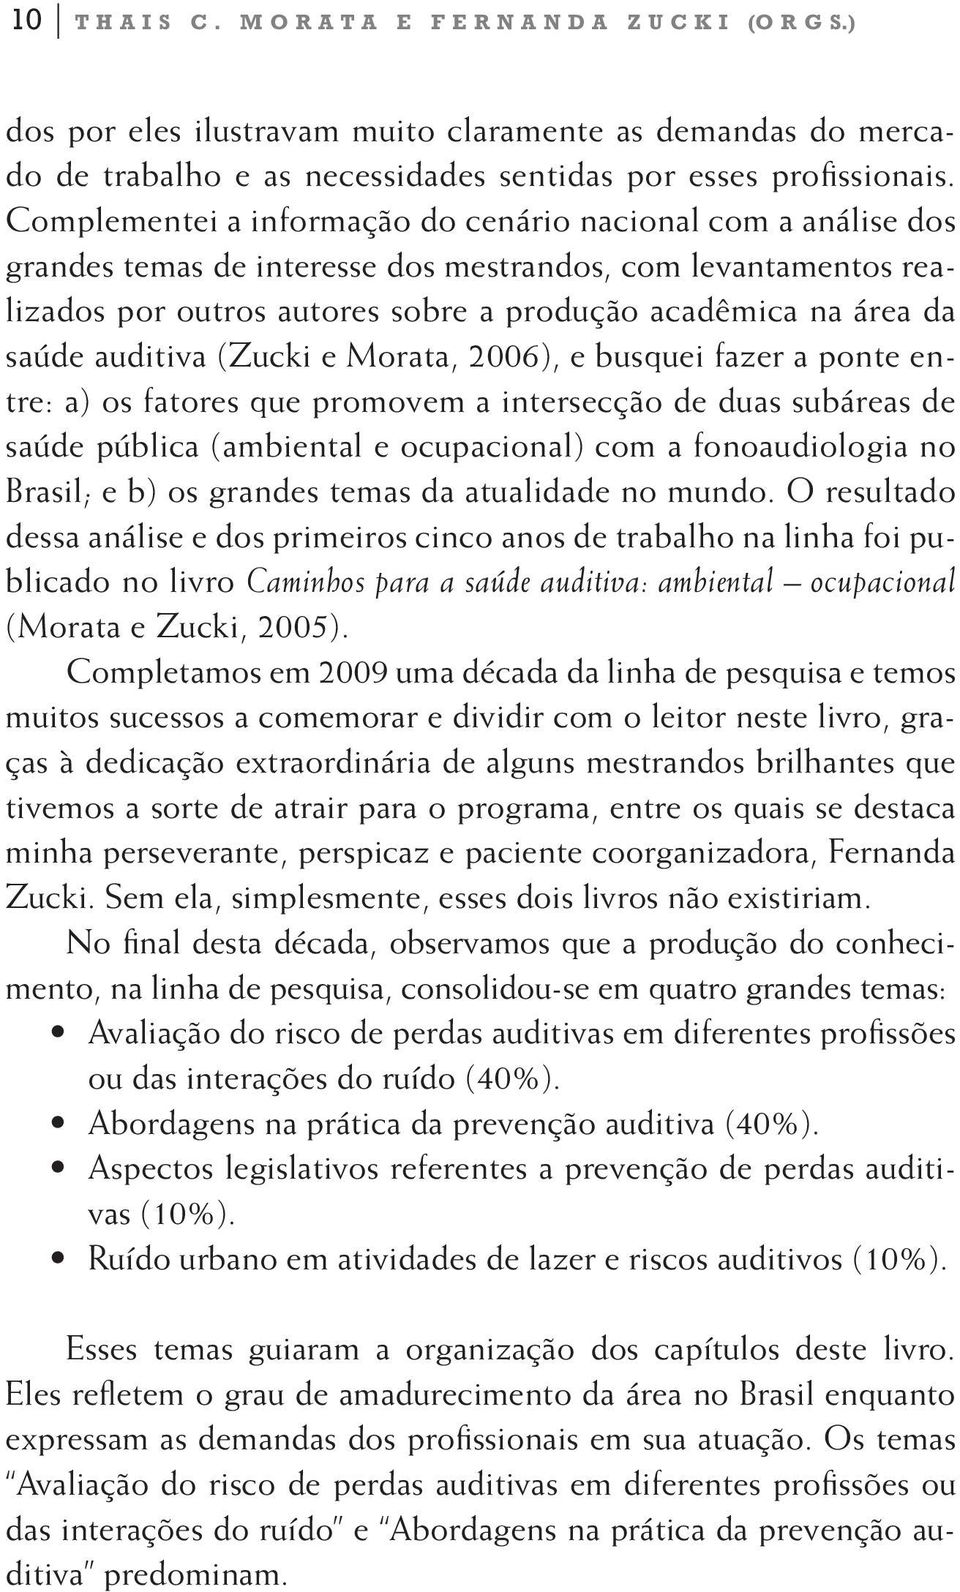 auditiva (Zucki e Morata, 2006), e busquei fazer a ponte entre: a) os fatores que promovem a intersecção de duas subáreas de saúde pública (ambiental e ocupacional) com a fonoaudiologia no Brasil; e